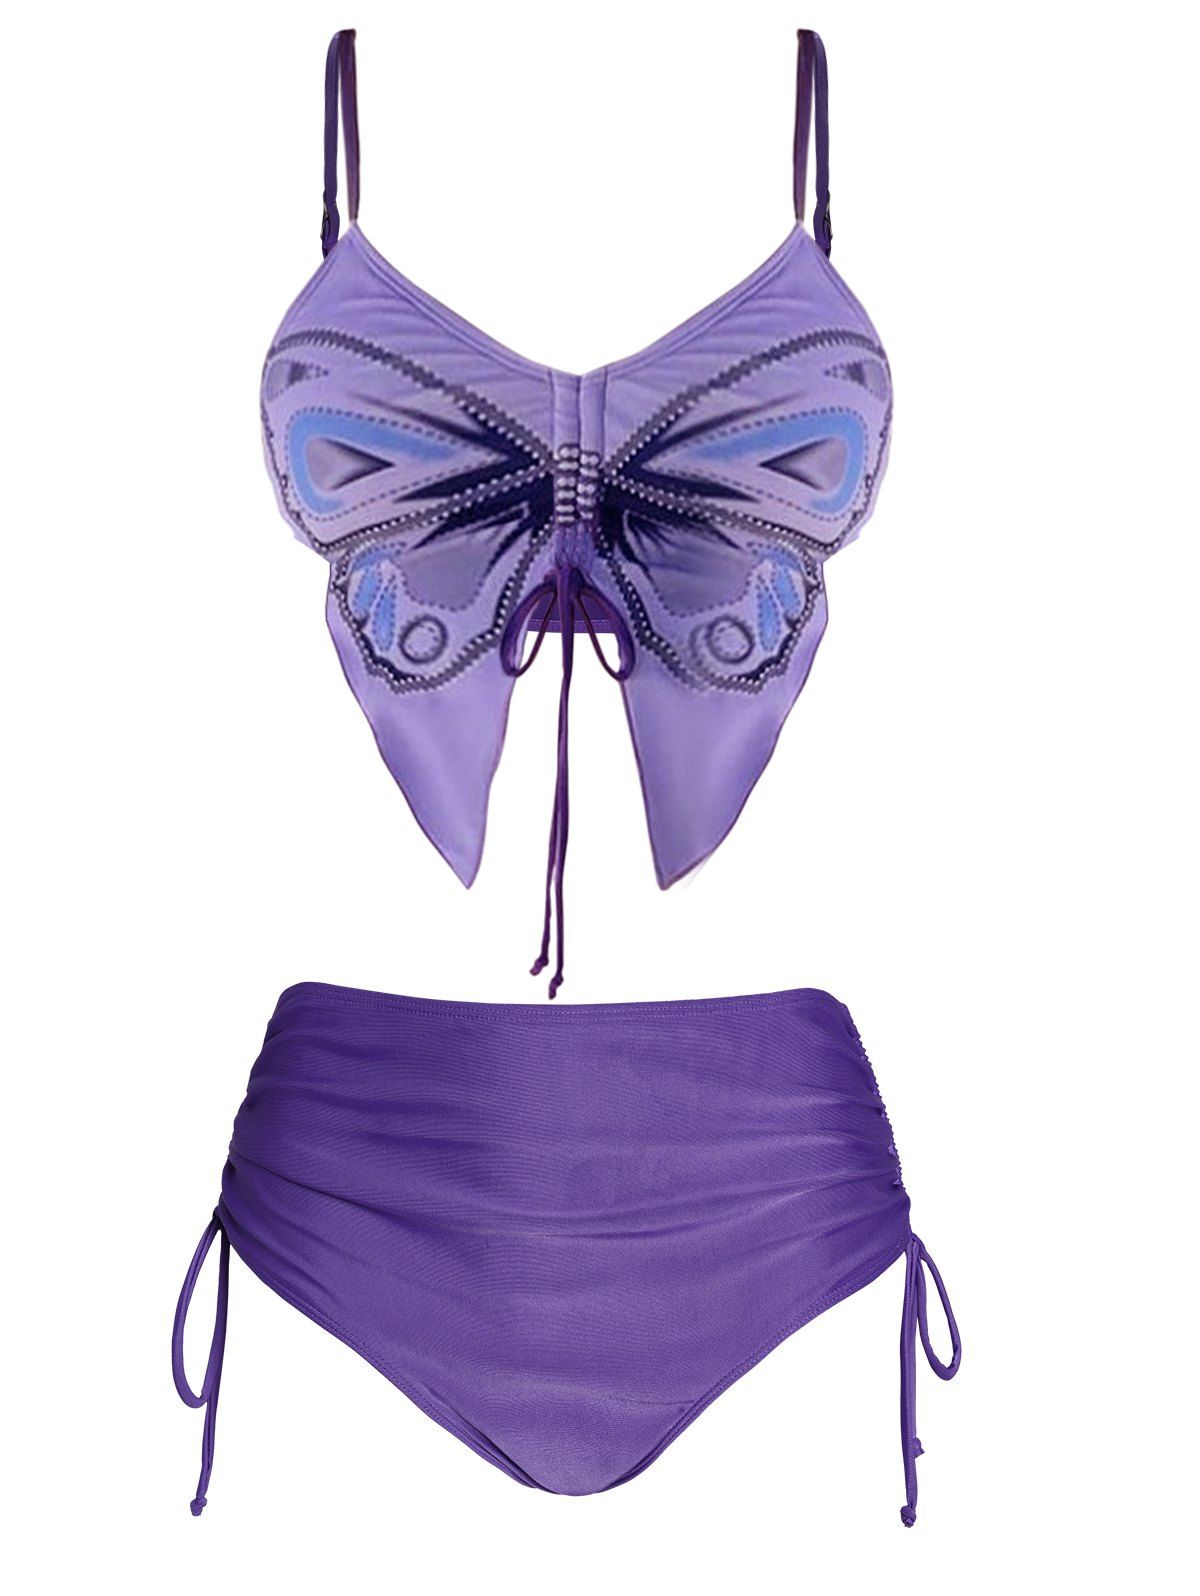 Butterfly Shape Bikini Swimsuit Cinched Padded Bikini Two Piece Swimwear High Waist Bathing Suit - LIGHT PURPLE S